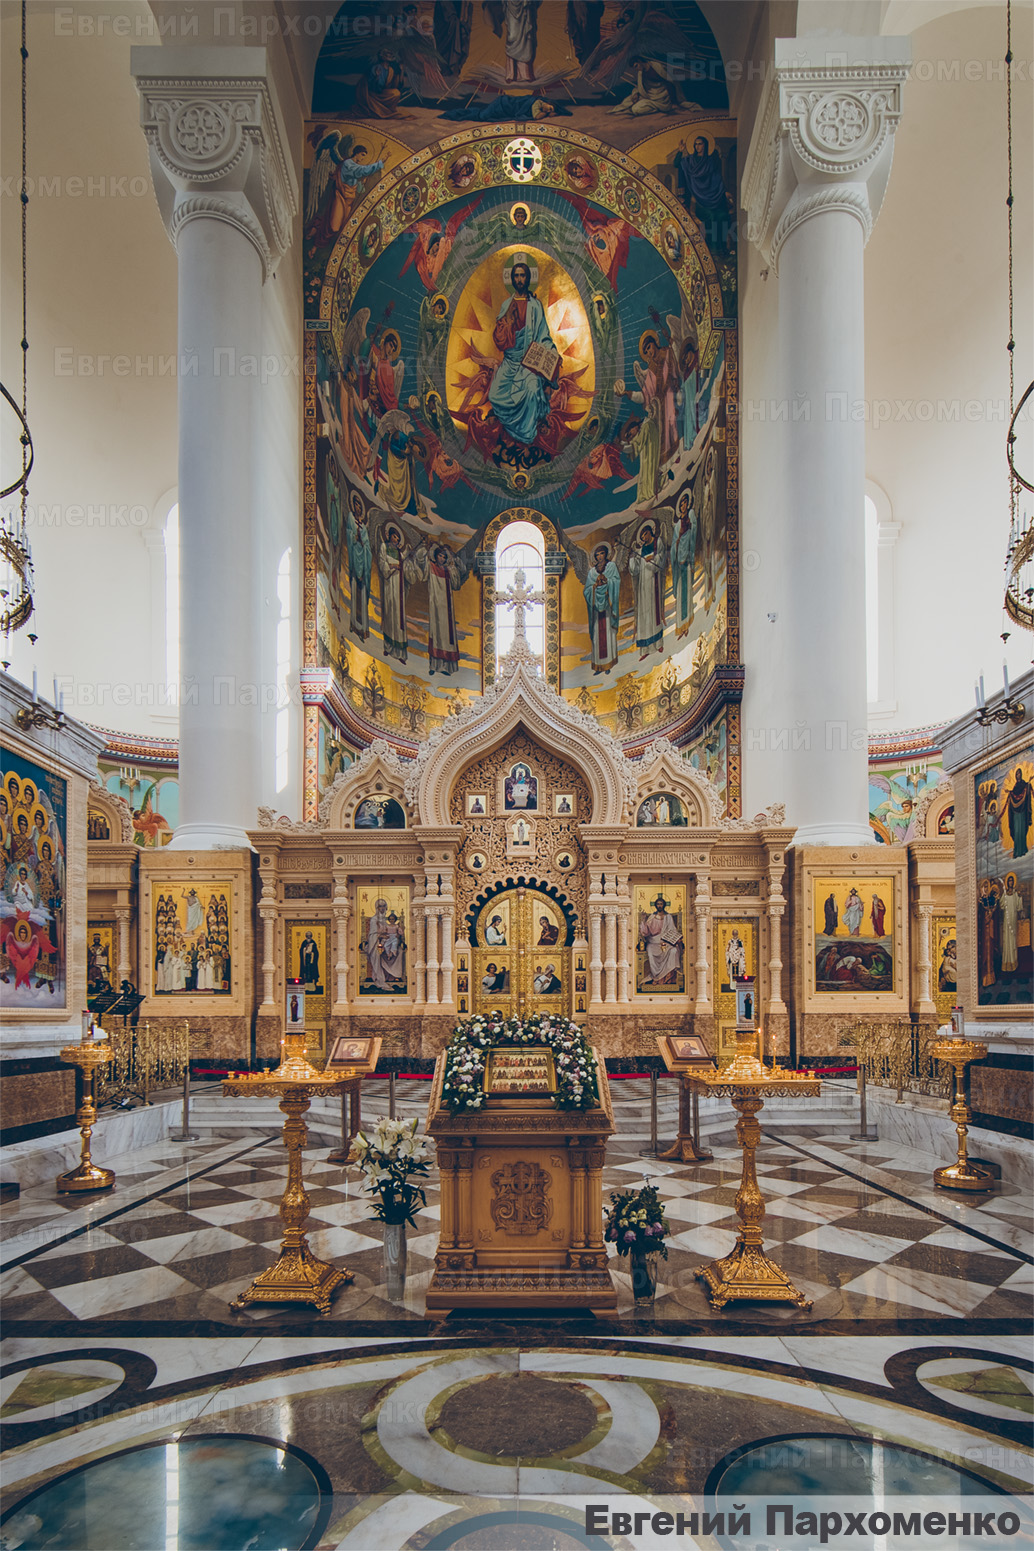 Мраморный иконостас в неорусском стиле в интерьере кафедрального собора